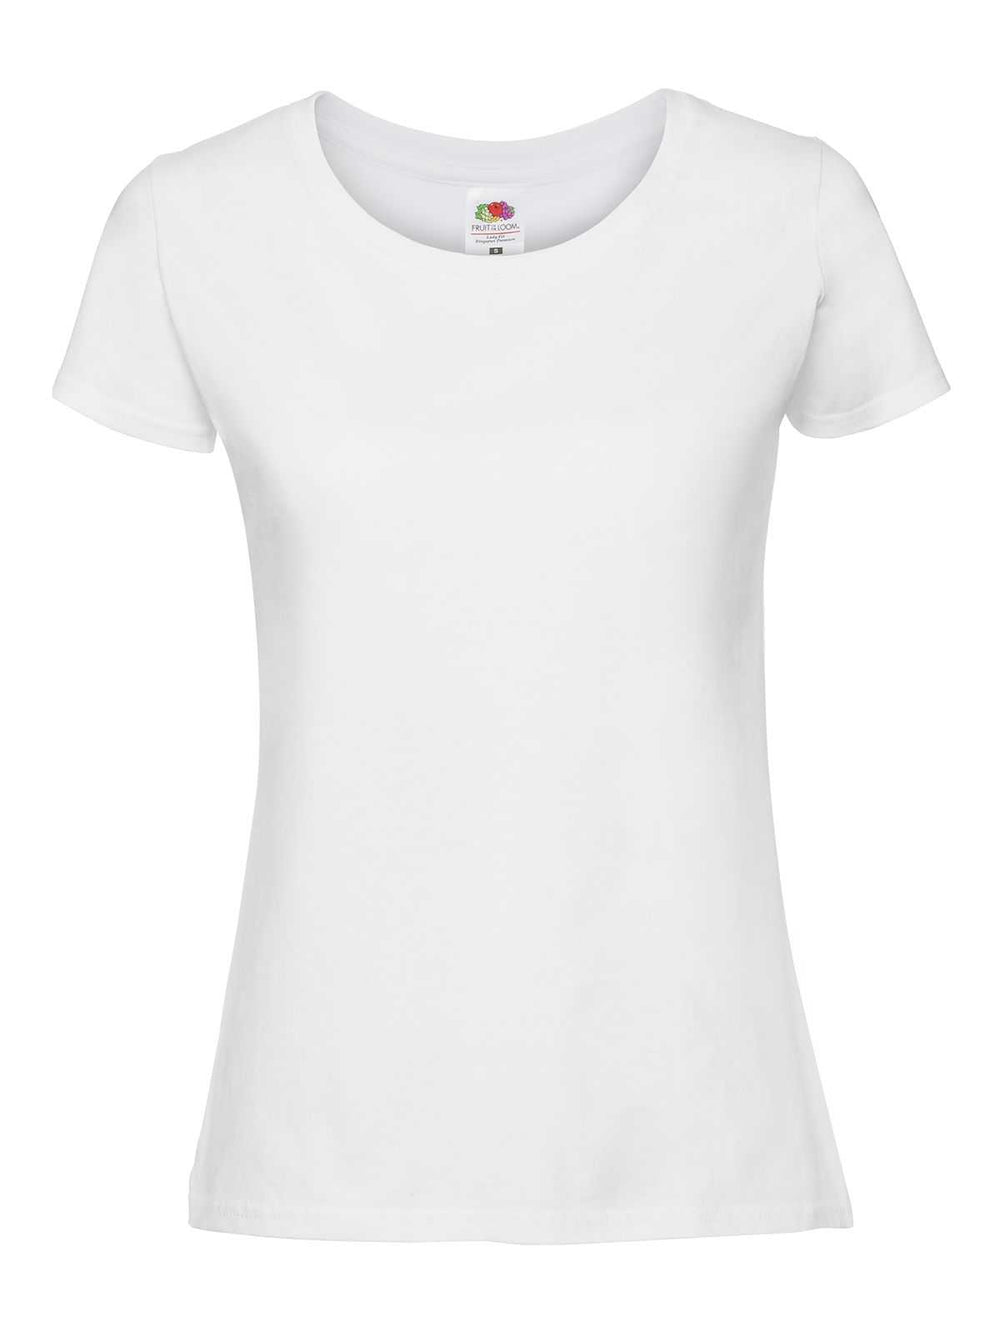 T-Shirt Donna Fruit of the Loom, 100% cotone, 190 grammi, colore bianco, personalizzabile con logo o testo